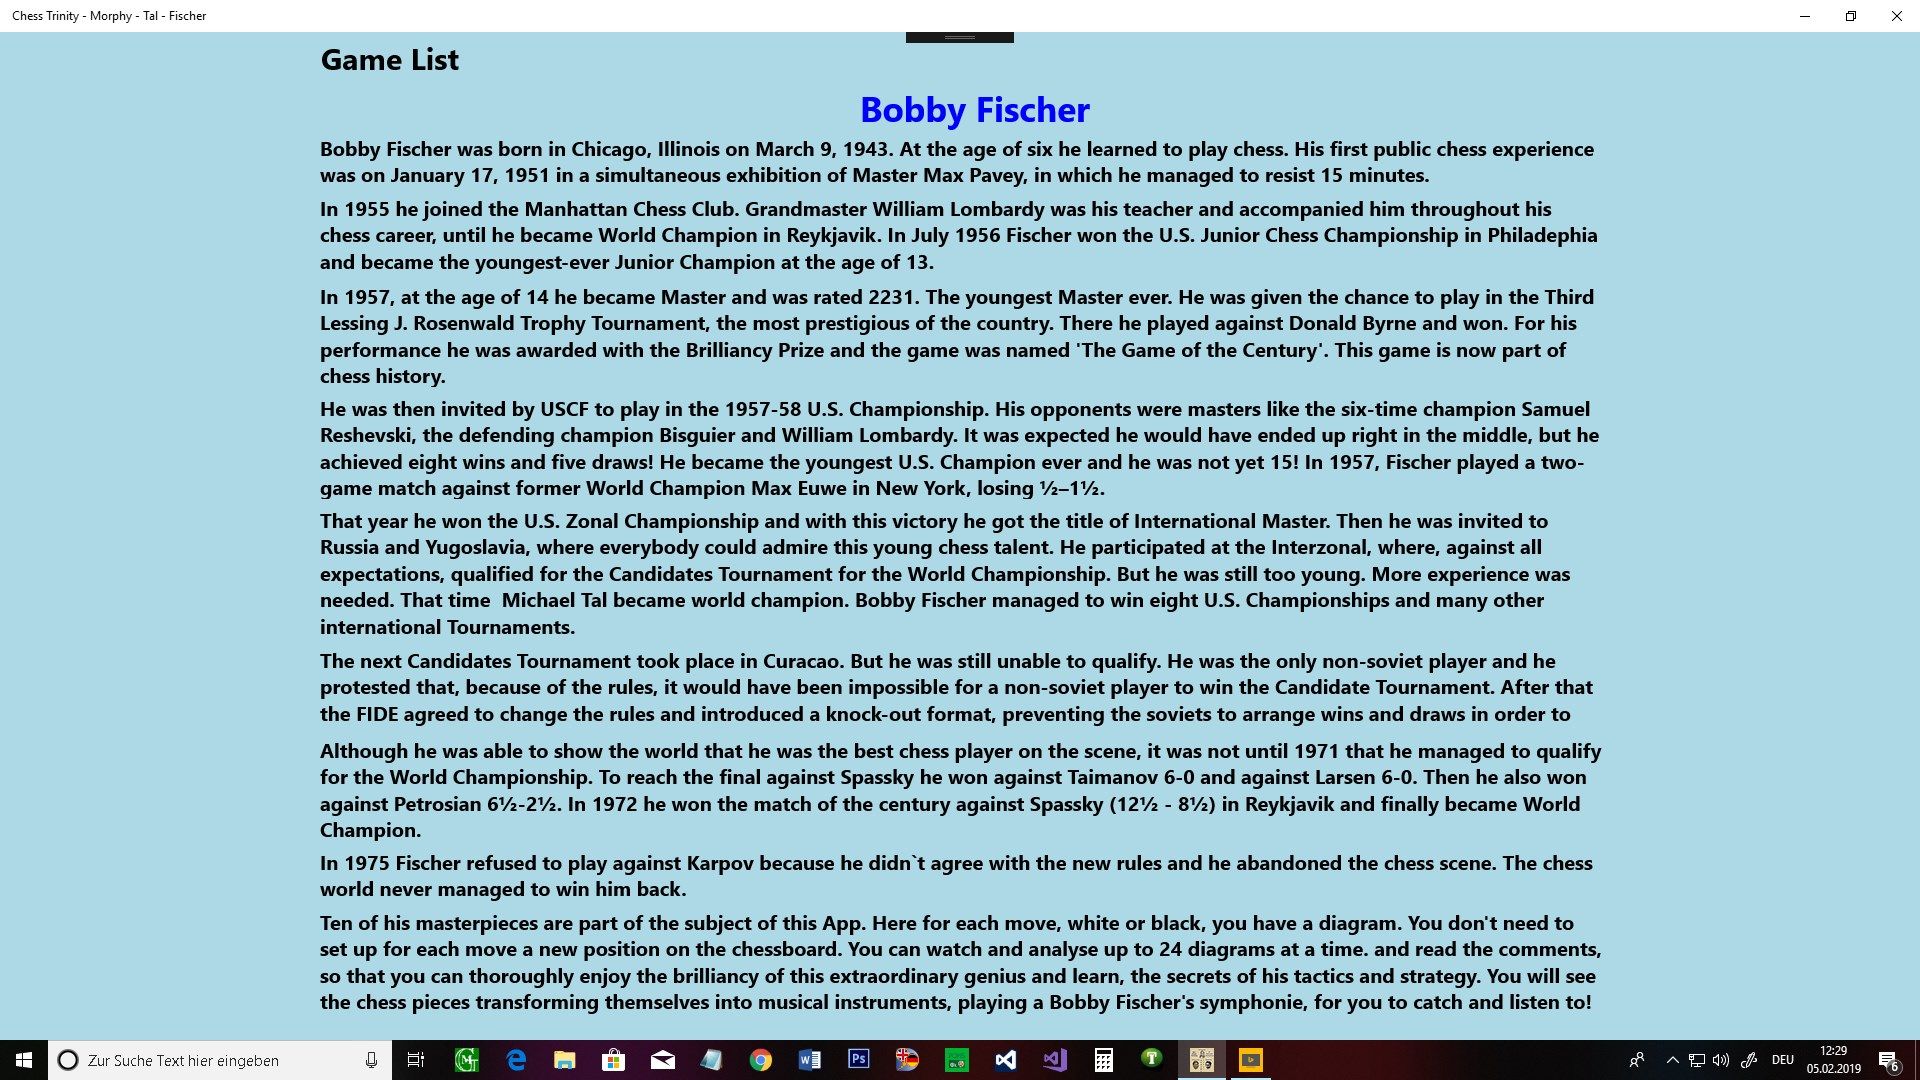 Bobby Fischer's presentation.